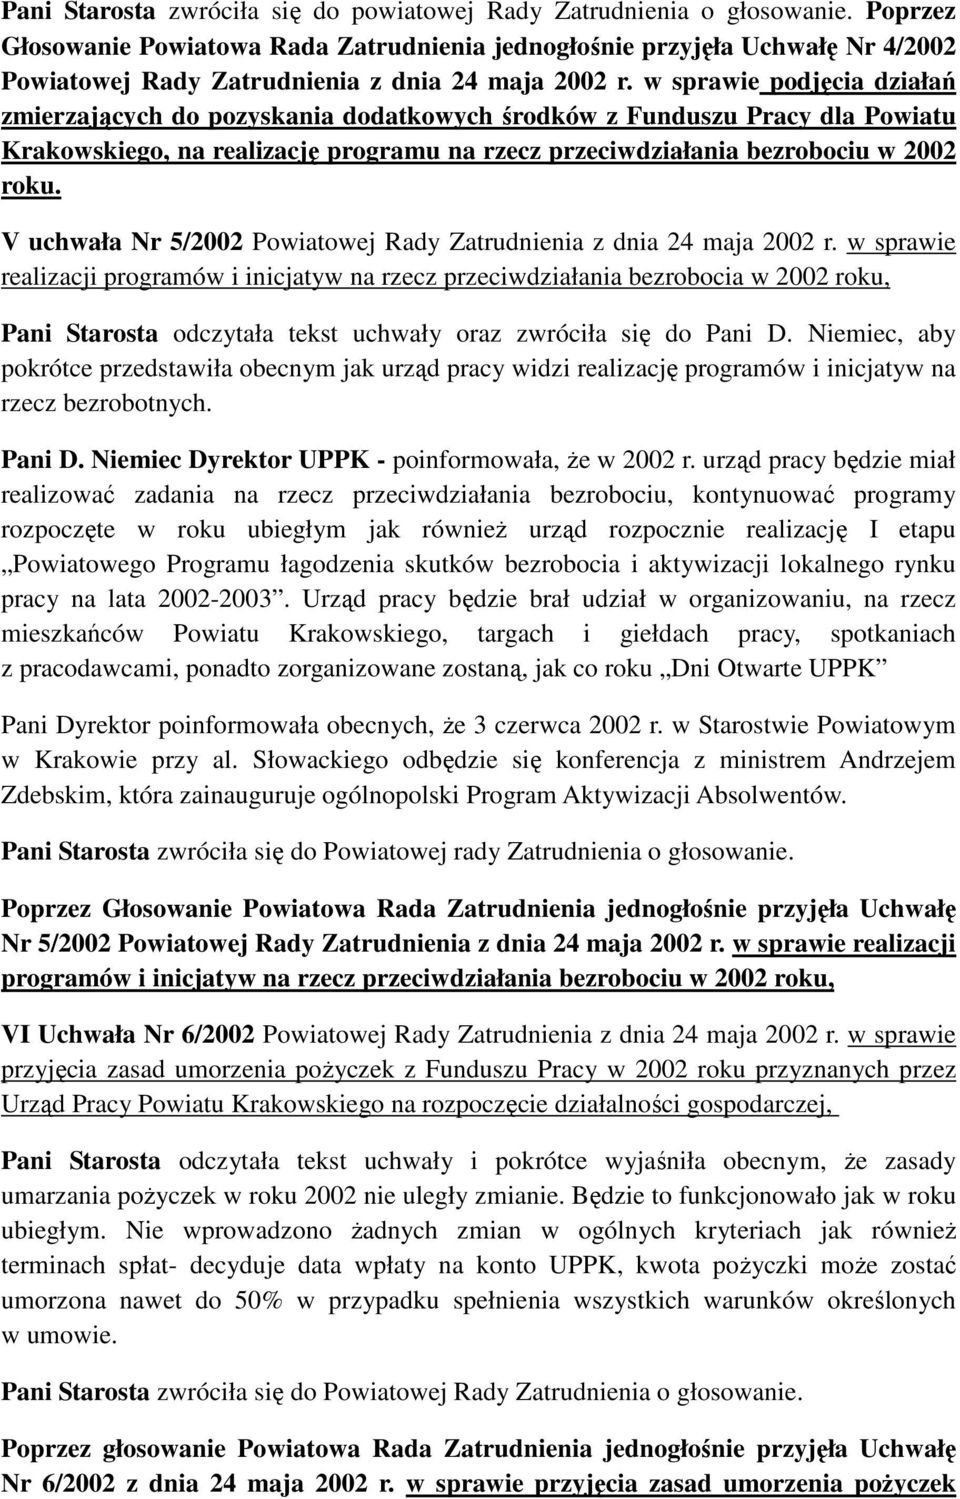 w sprawie podjęcia działań zmierzających do pozyskania dodatkowych środków z Funduszu Pracy dla Powiatu Krakowskiego, na realizację programu na rzecz przeciwdziałania bezrobociu w 2002 roku.